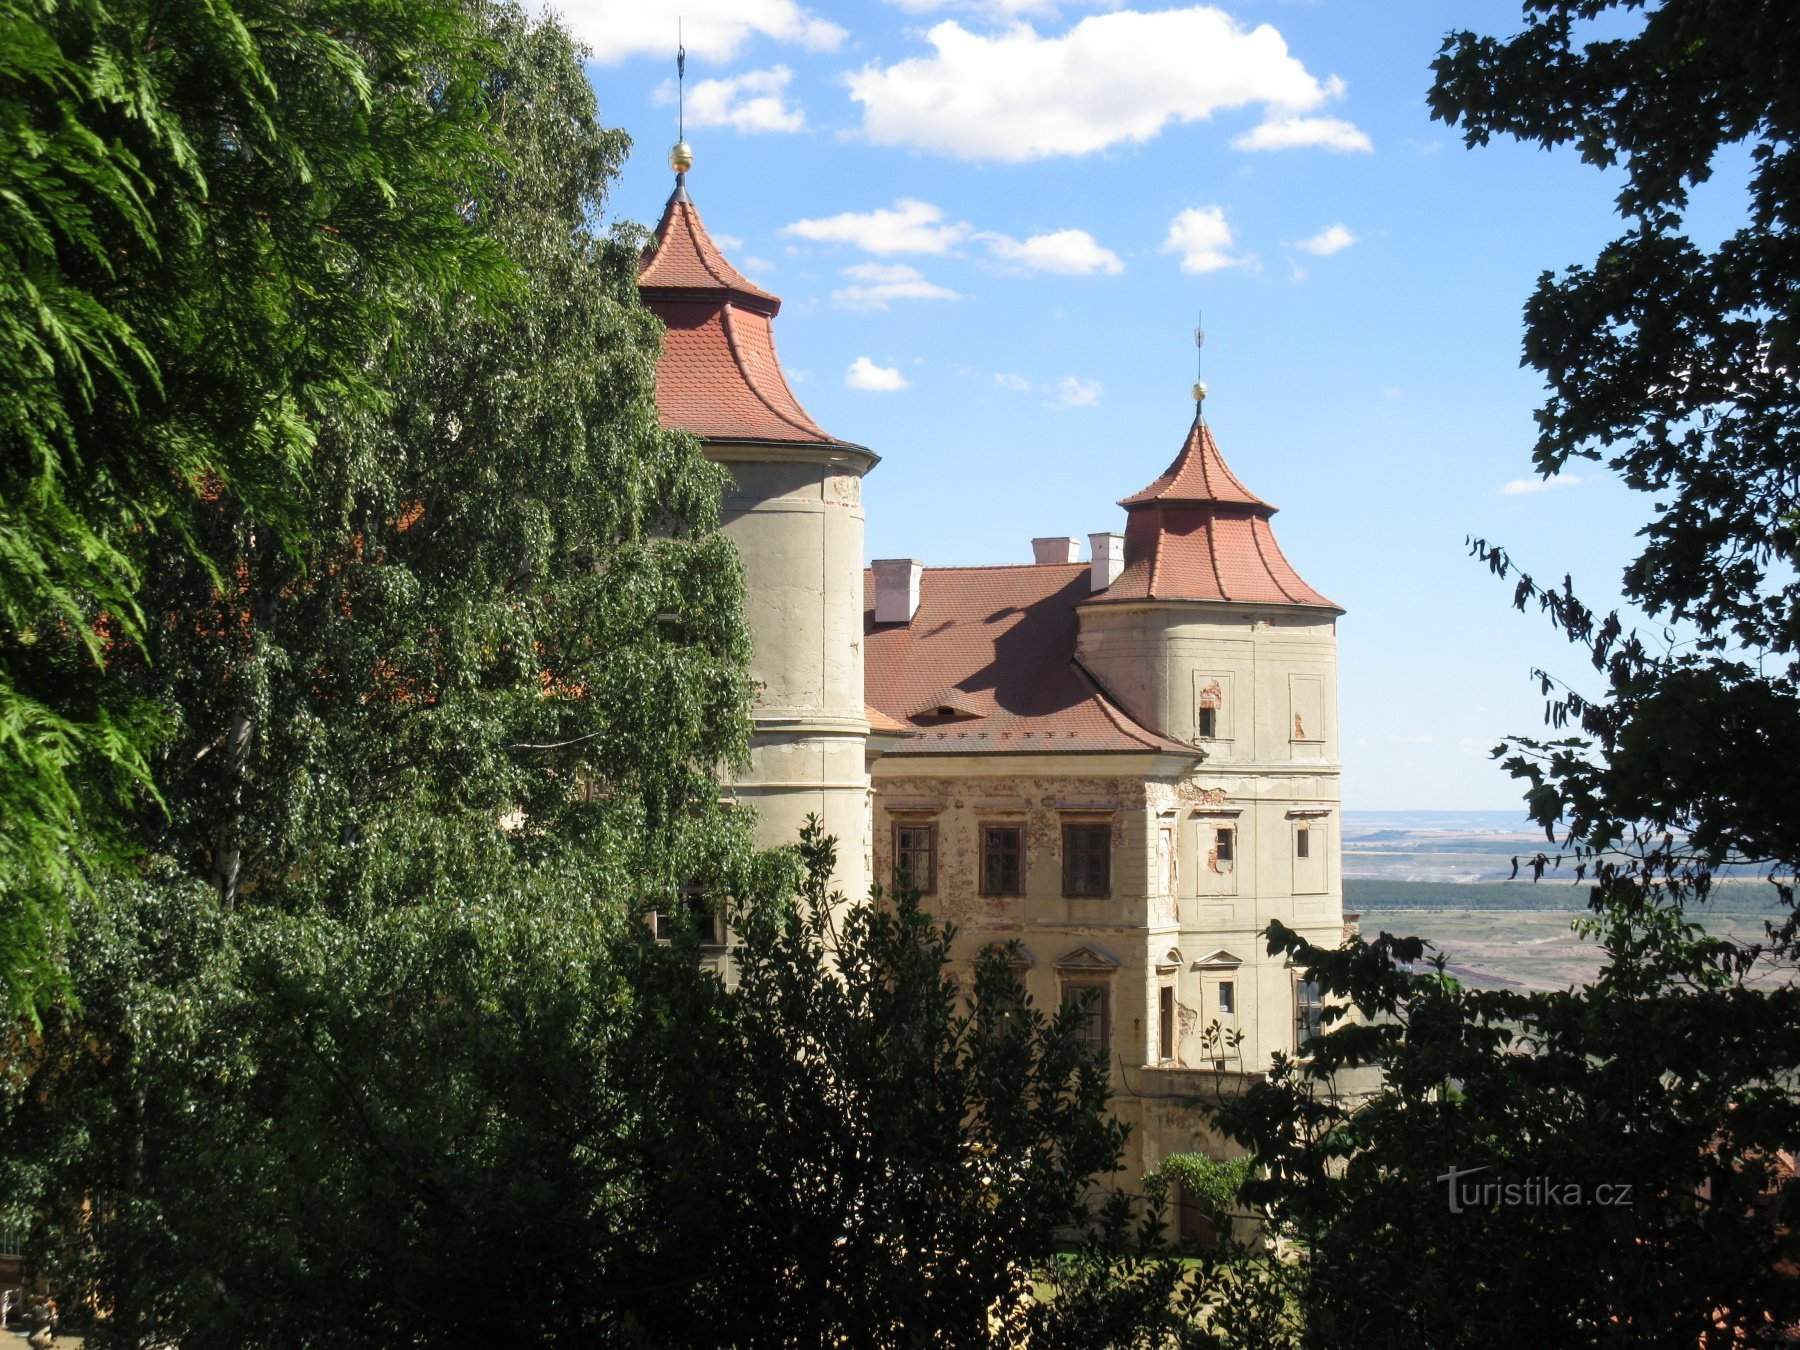 Vista del castillo desde la entrada lateral